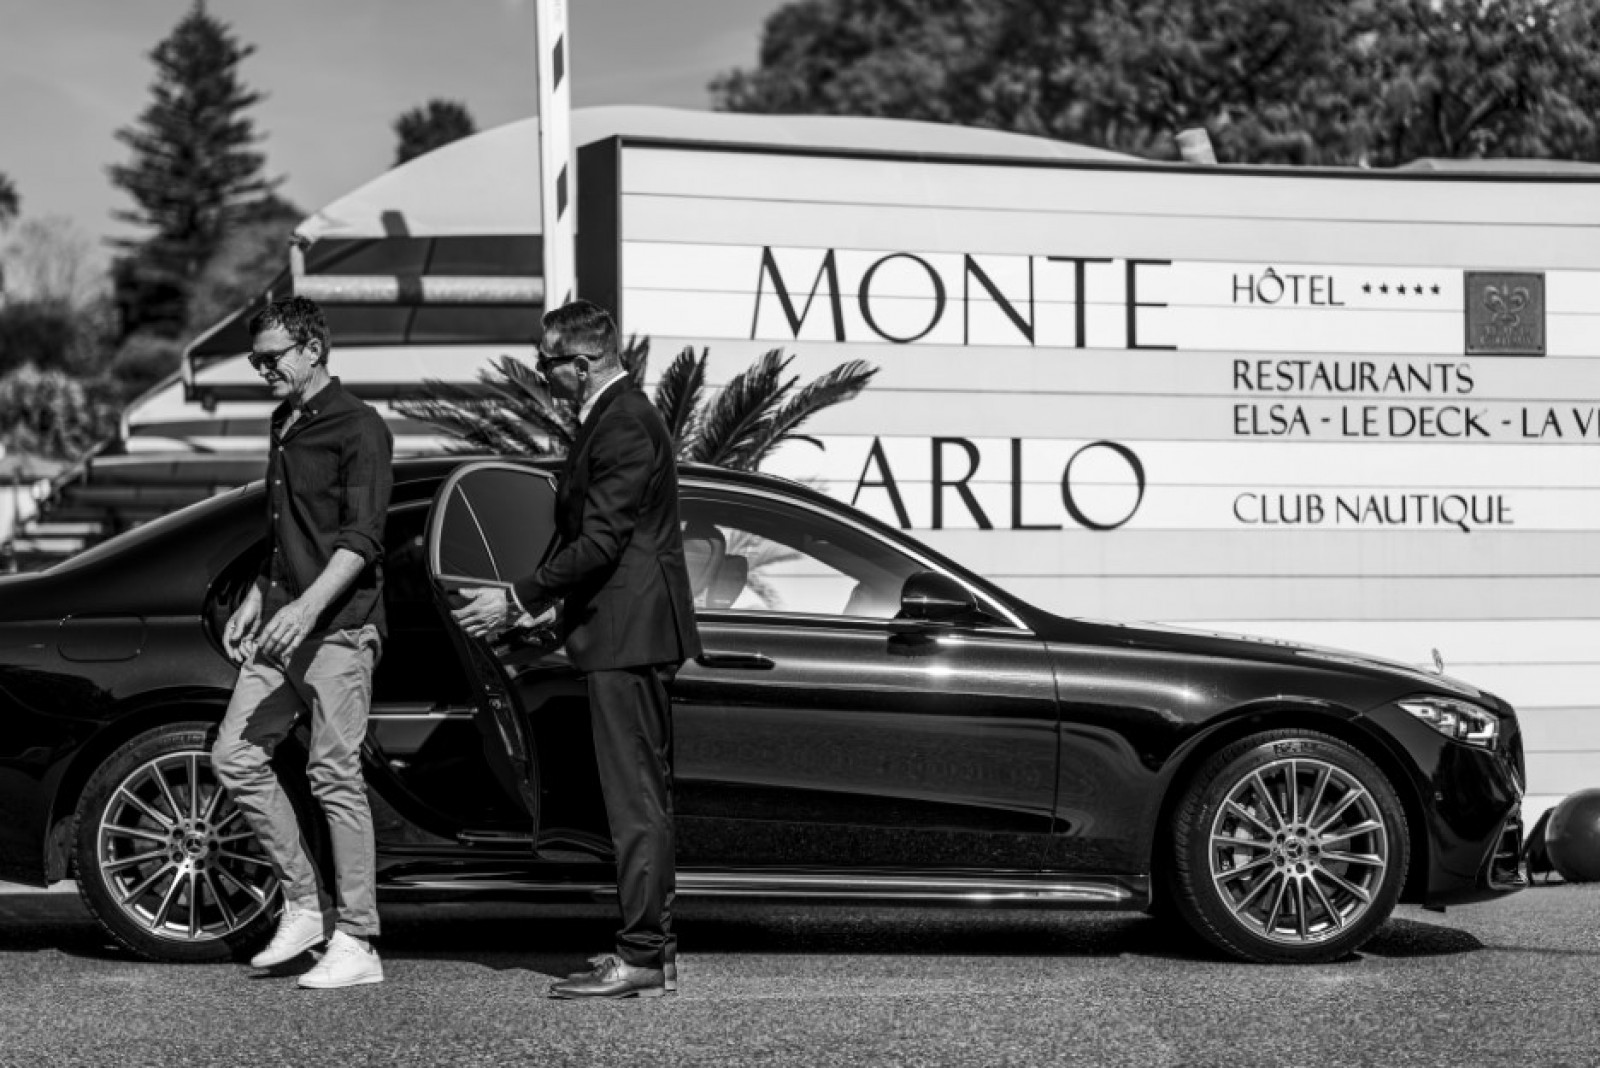 Limo Service with Private Driver in Roquebrune-Cap-Martin – 24/7 Service – VIP Limousine Service – Book Online – Near Monaco 